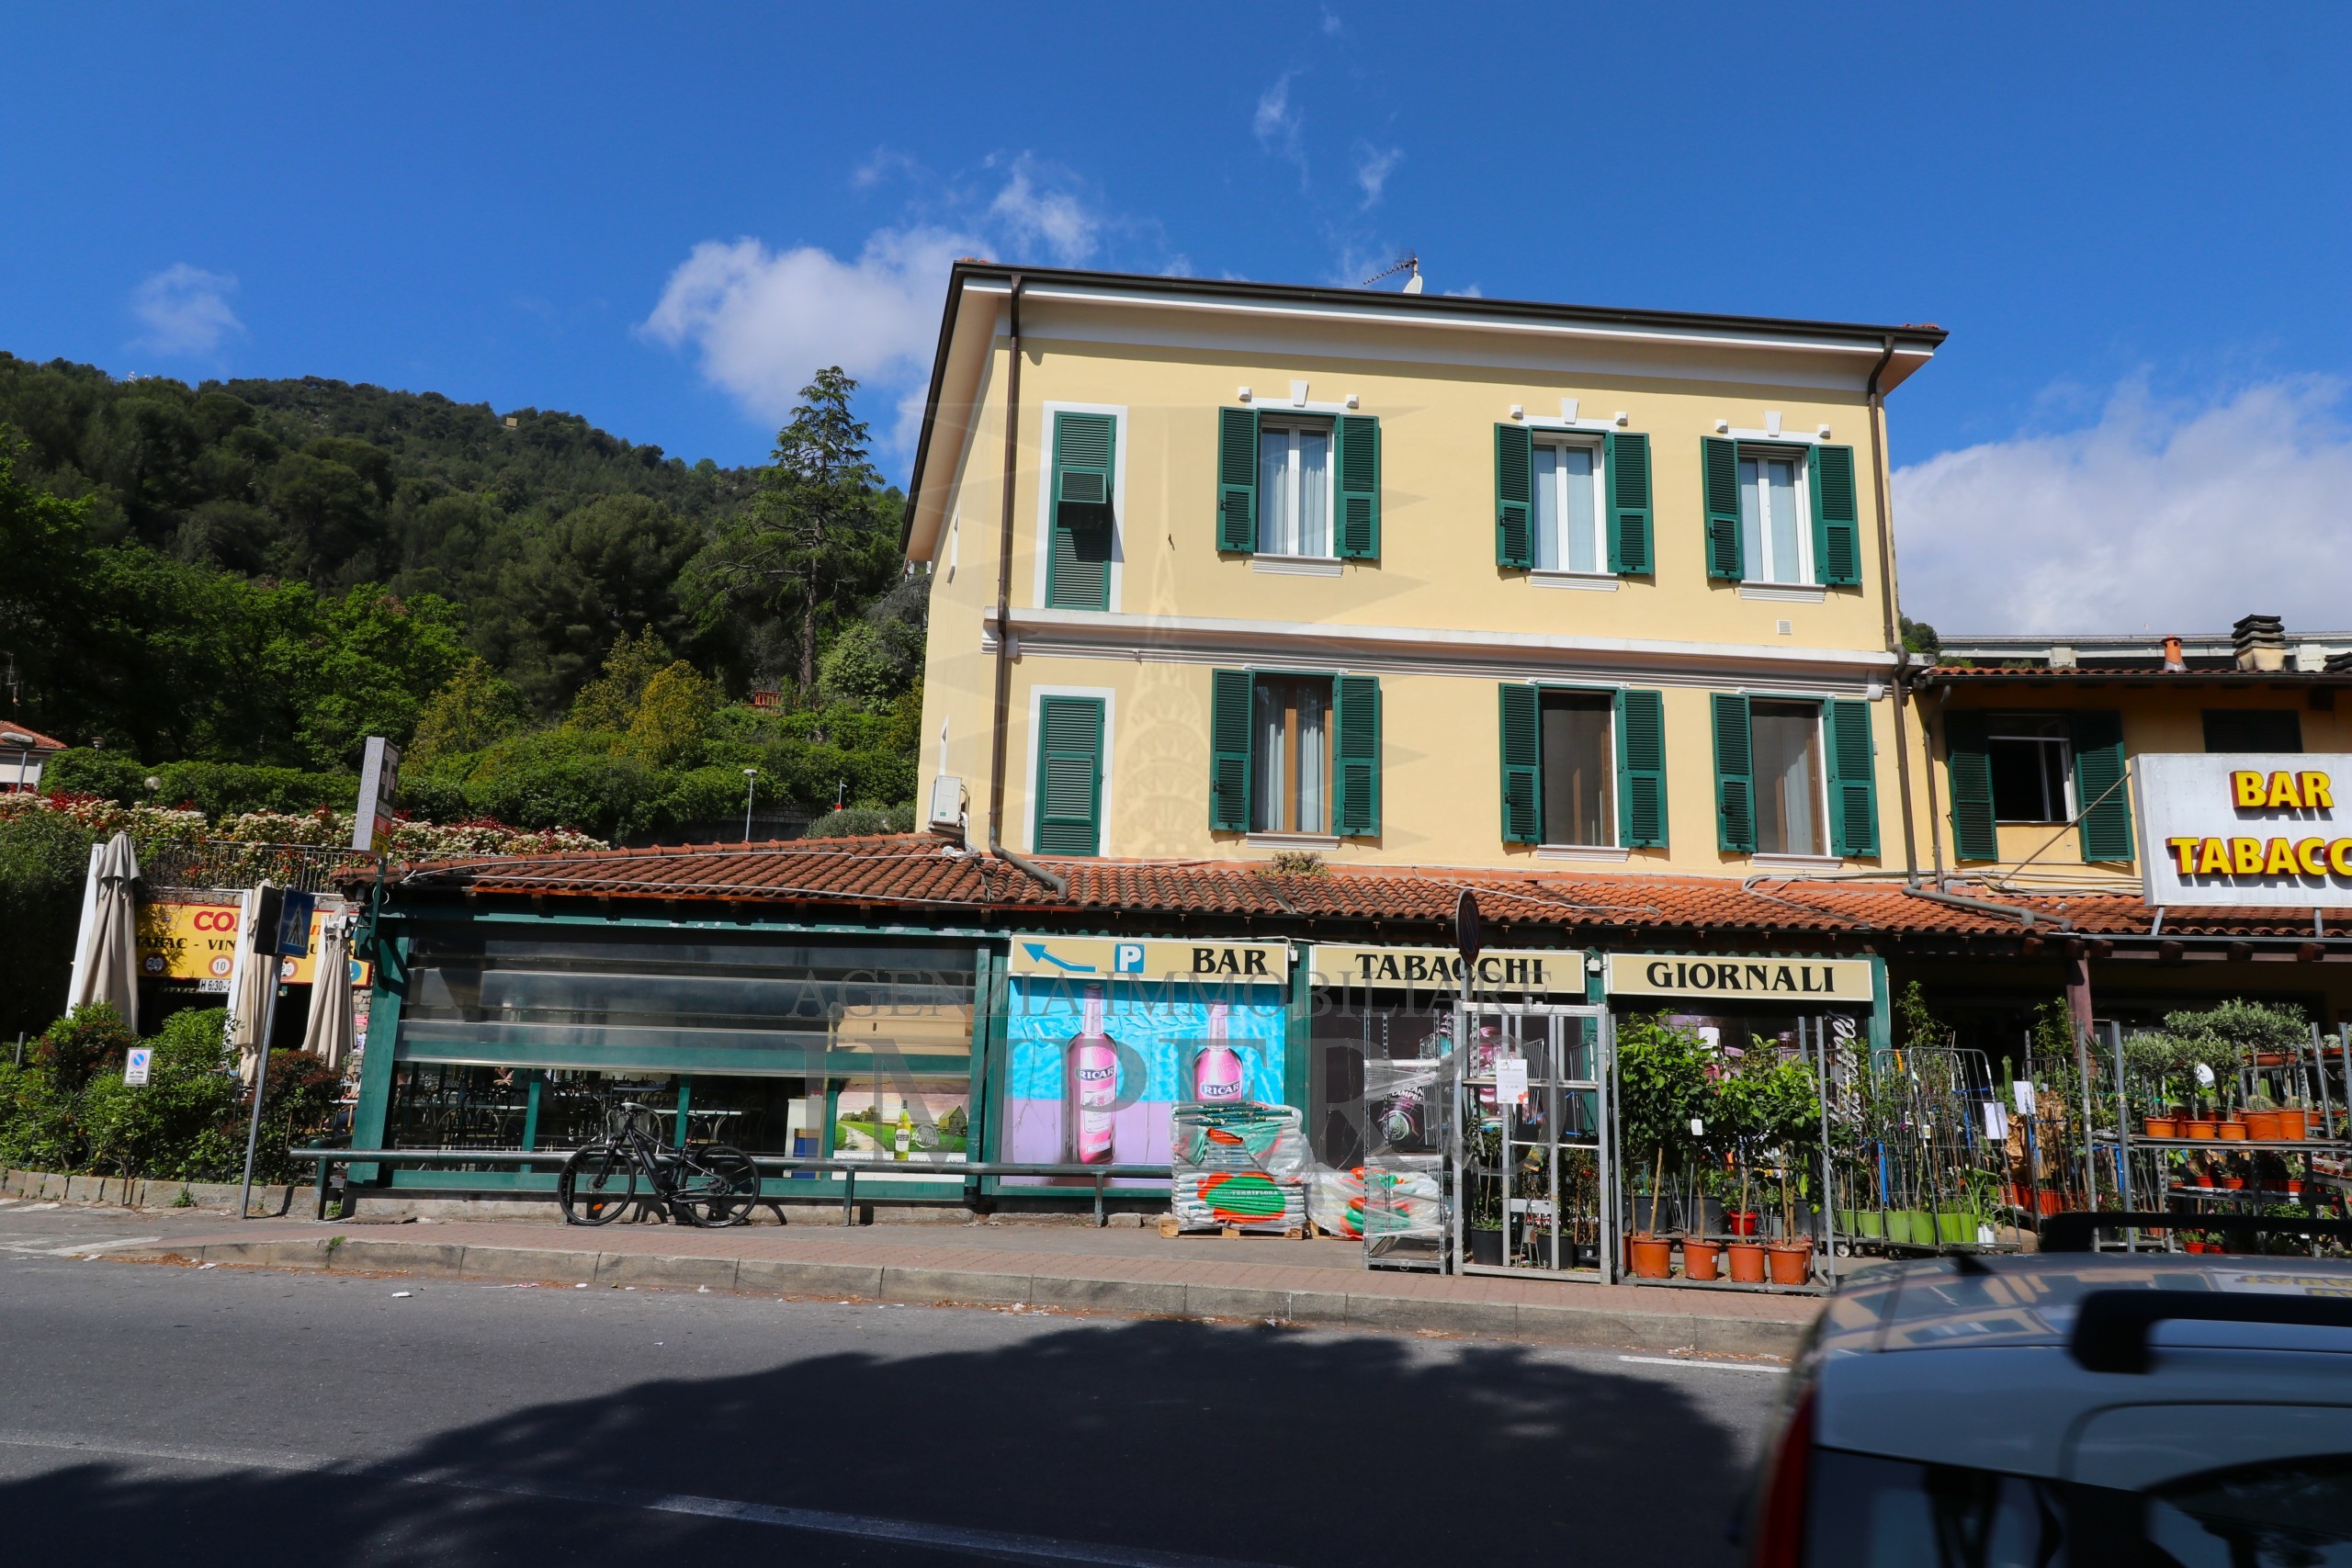 Locale commerciale in vendita in corso nizza 104, Ventimiglia